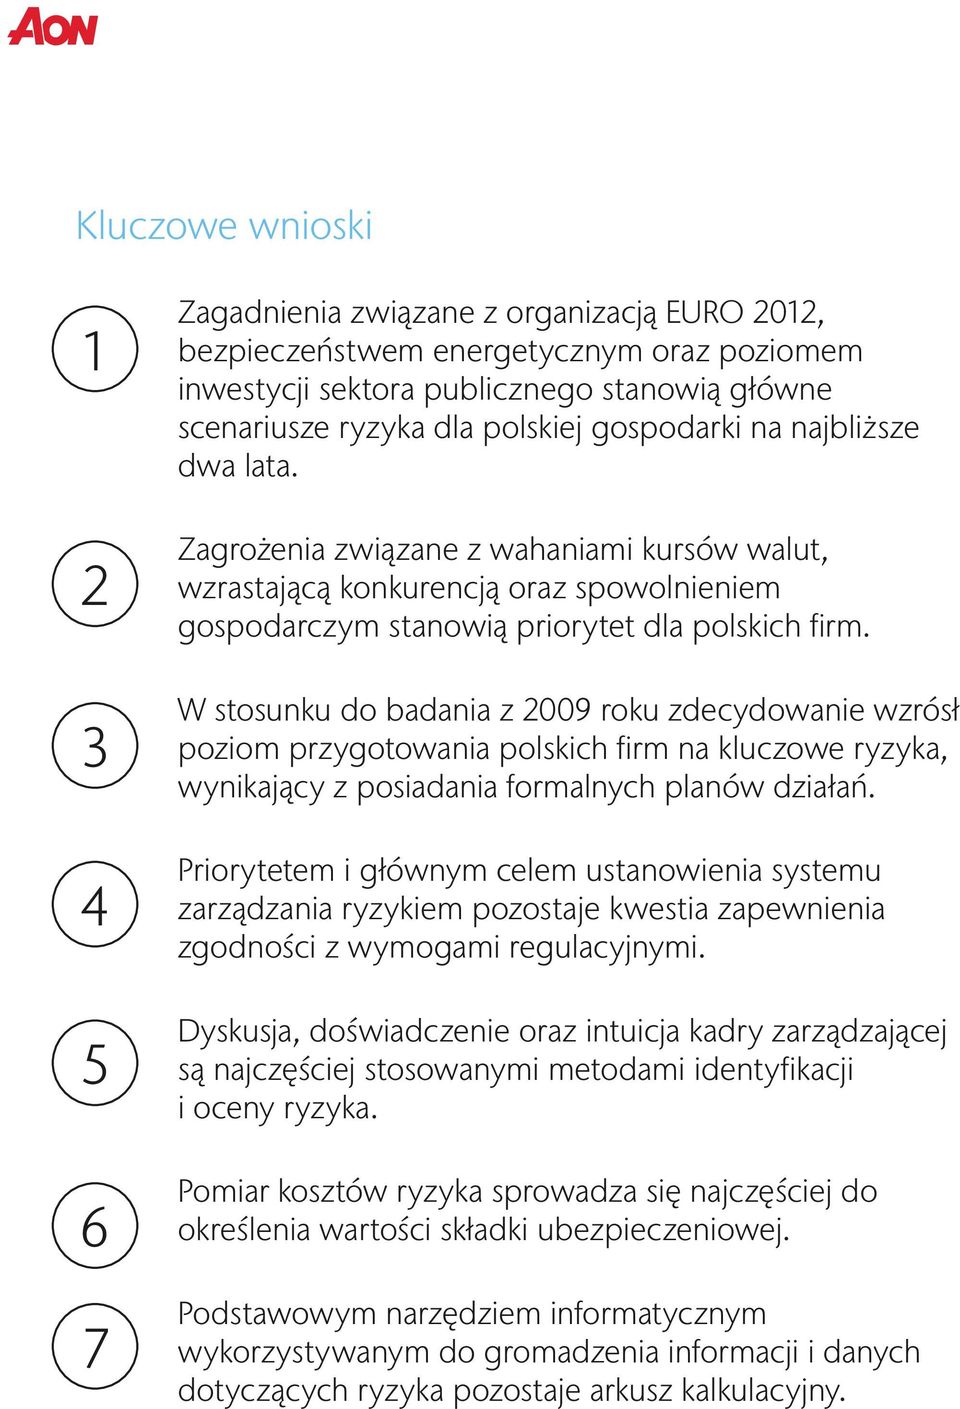 W stosunku do badania z 2009 roku zdecydowanie wzrósł poziom przygotowania polskich firm na kluczowe ryzyka, wynikający z posiadania formalnych planów działań.